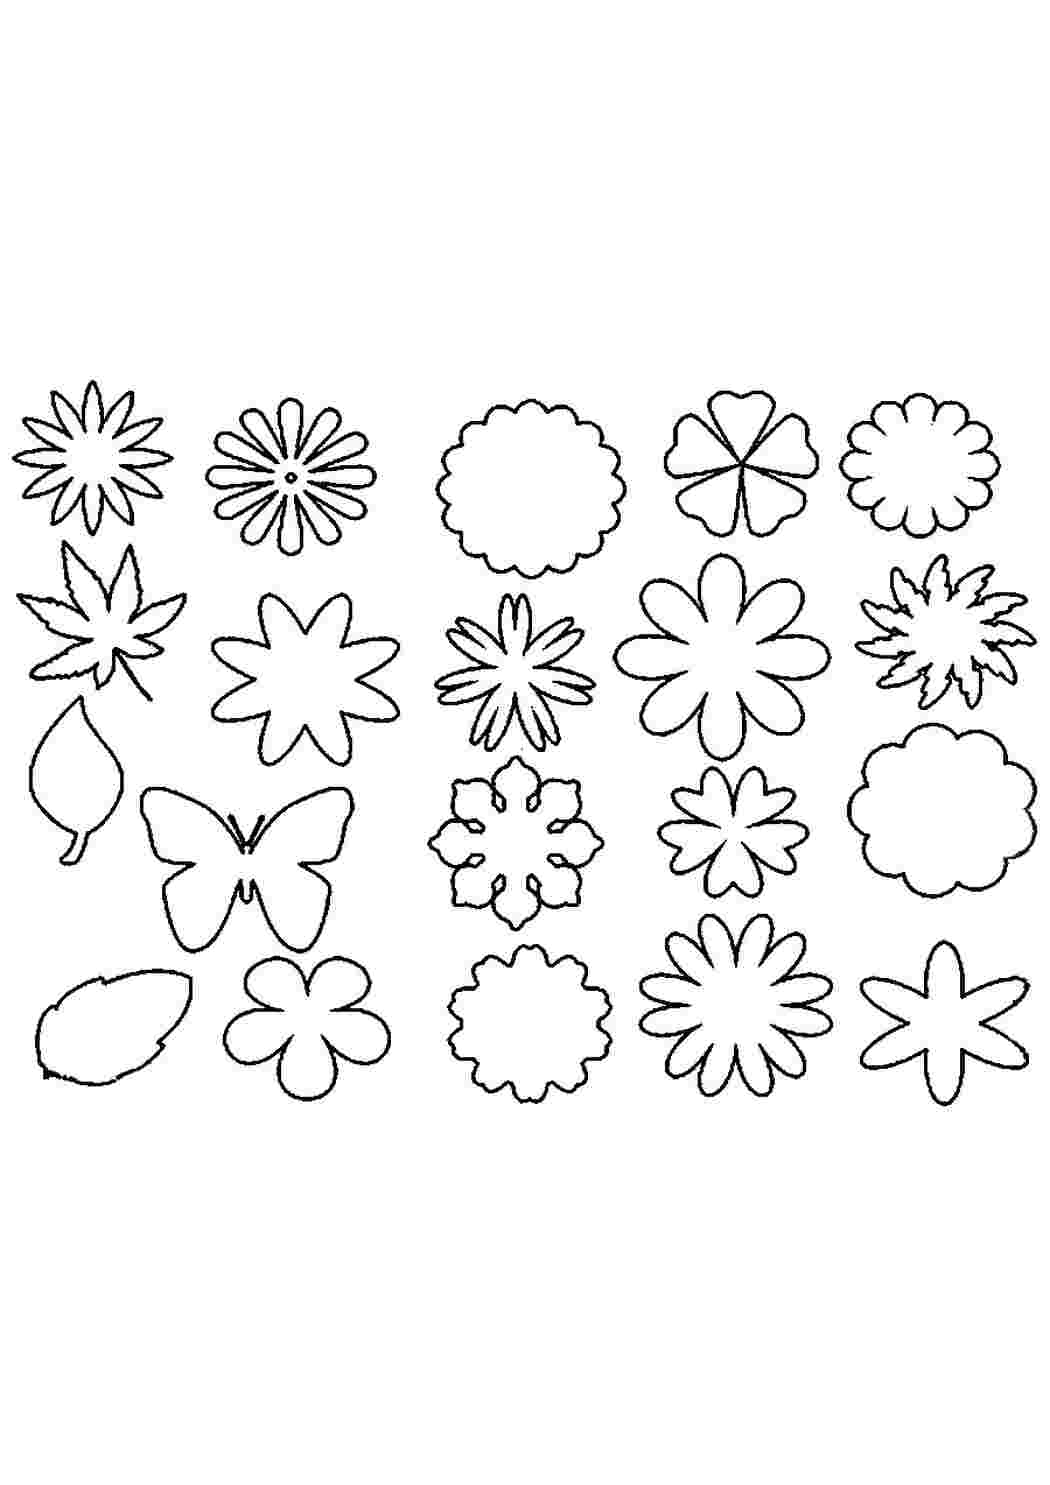 Раскраски Контуры цветов для вырезания скрапбукинга поделок и аппликаций скачать бесплатно онлайн Шаблоны цветов для создания аппликаций и поделок в детском саду распечатать на сайте